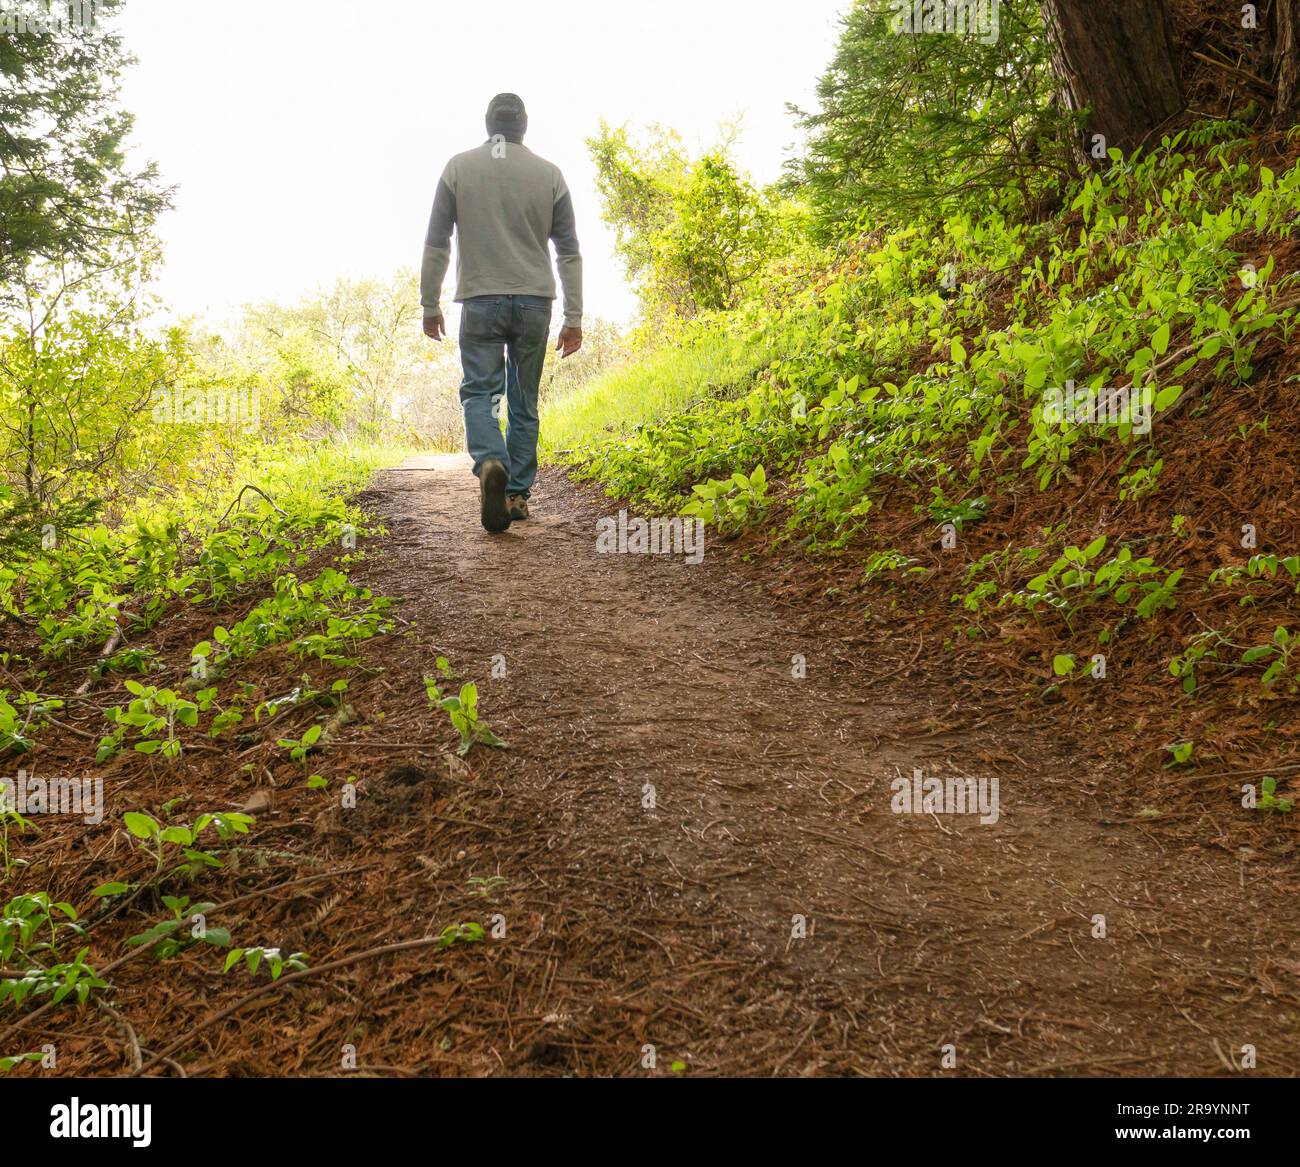 Homme marchant sur un sentier à travers les bois vers une zone lumineuse éclairée avec arbustes verts et arbres de chaque côté, portant un Jean et un chapeau. Banque D'Images